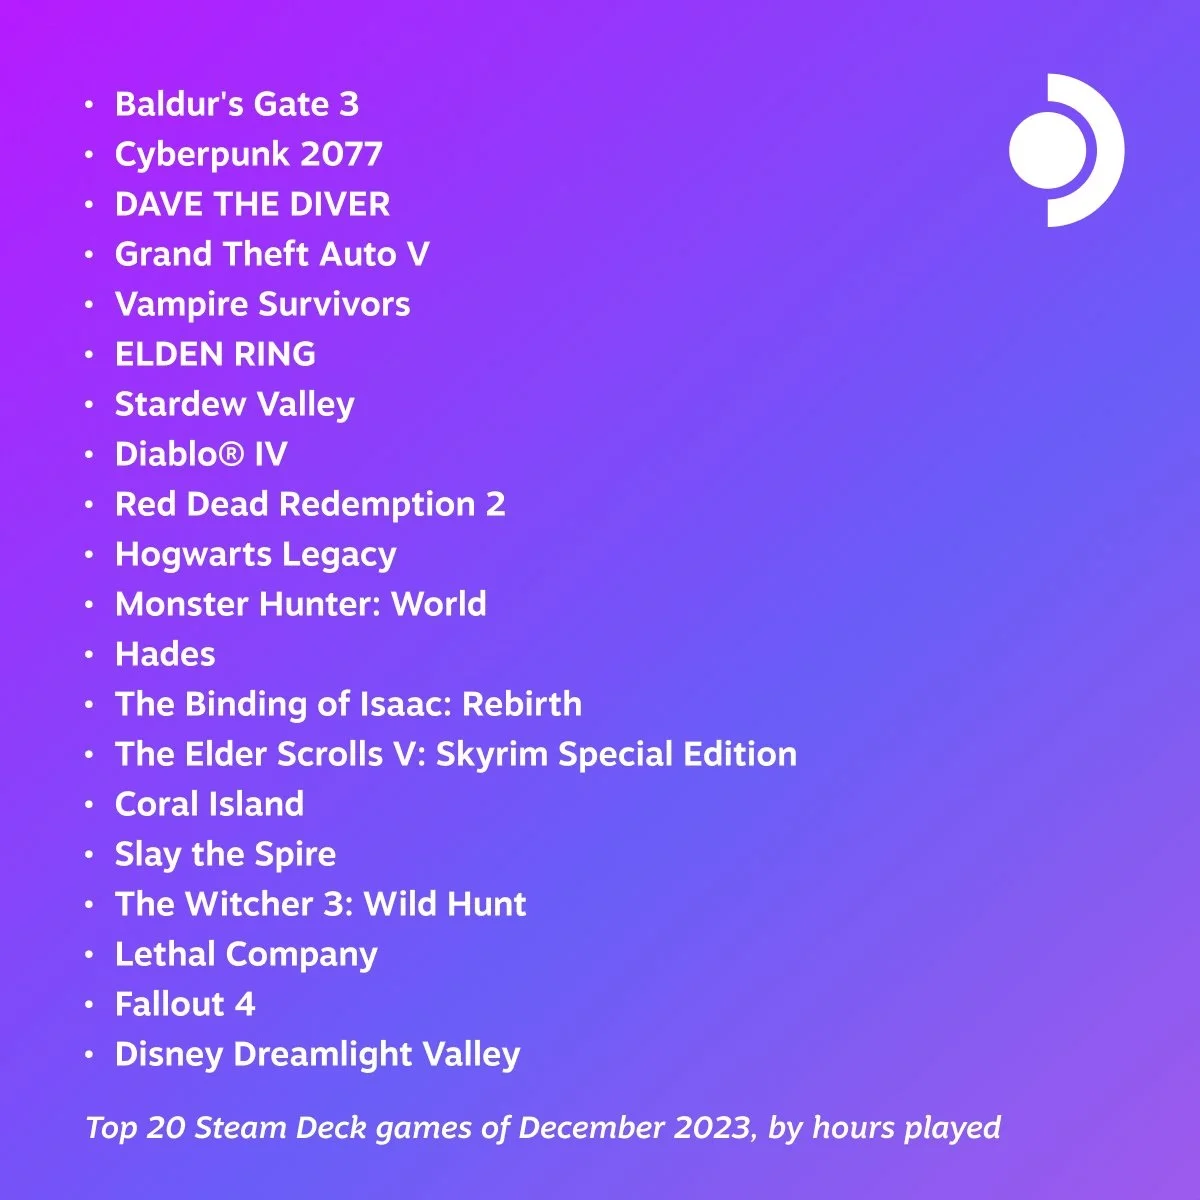 Baldurs Gate 3 и Cyberpunk 2077 вновь возглавили свежий топ игр на Steam Deck - фото 1